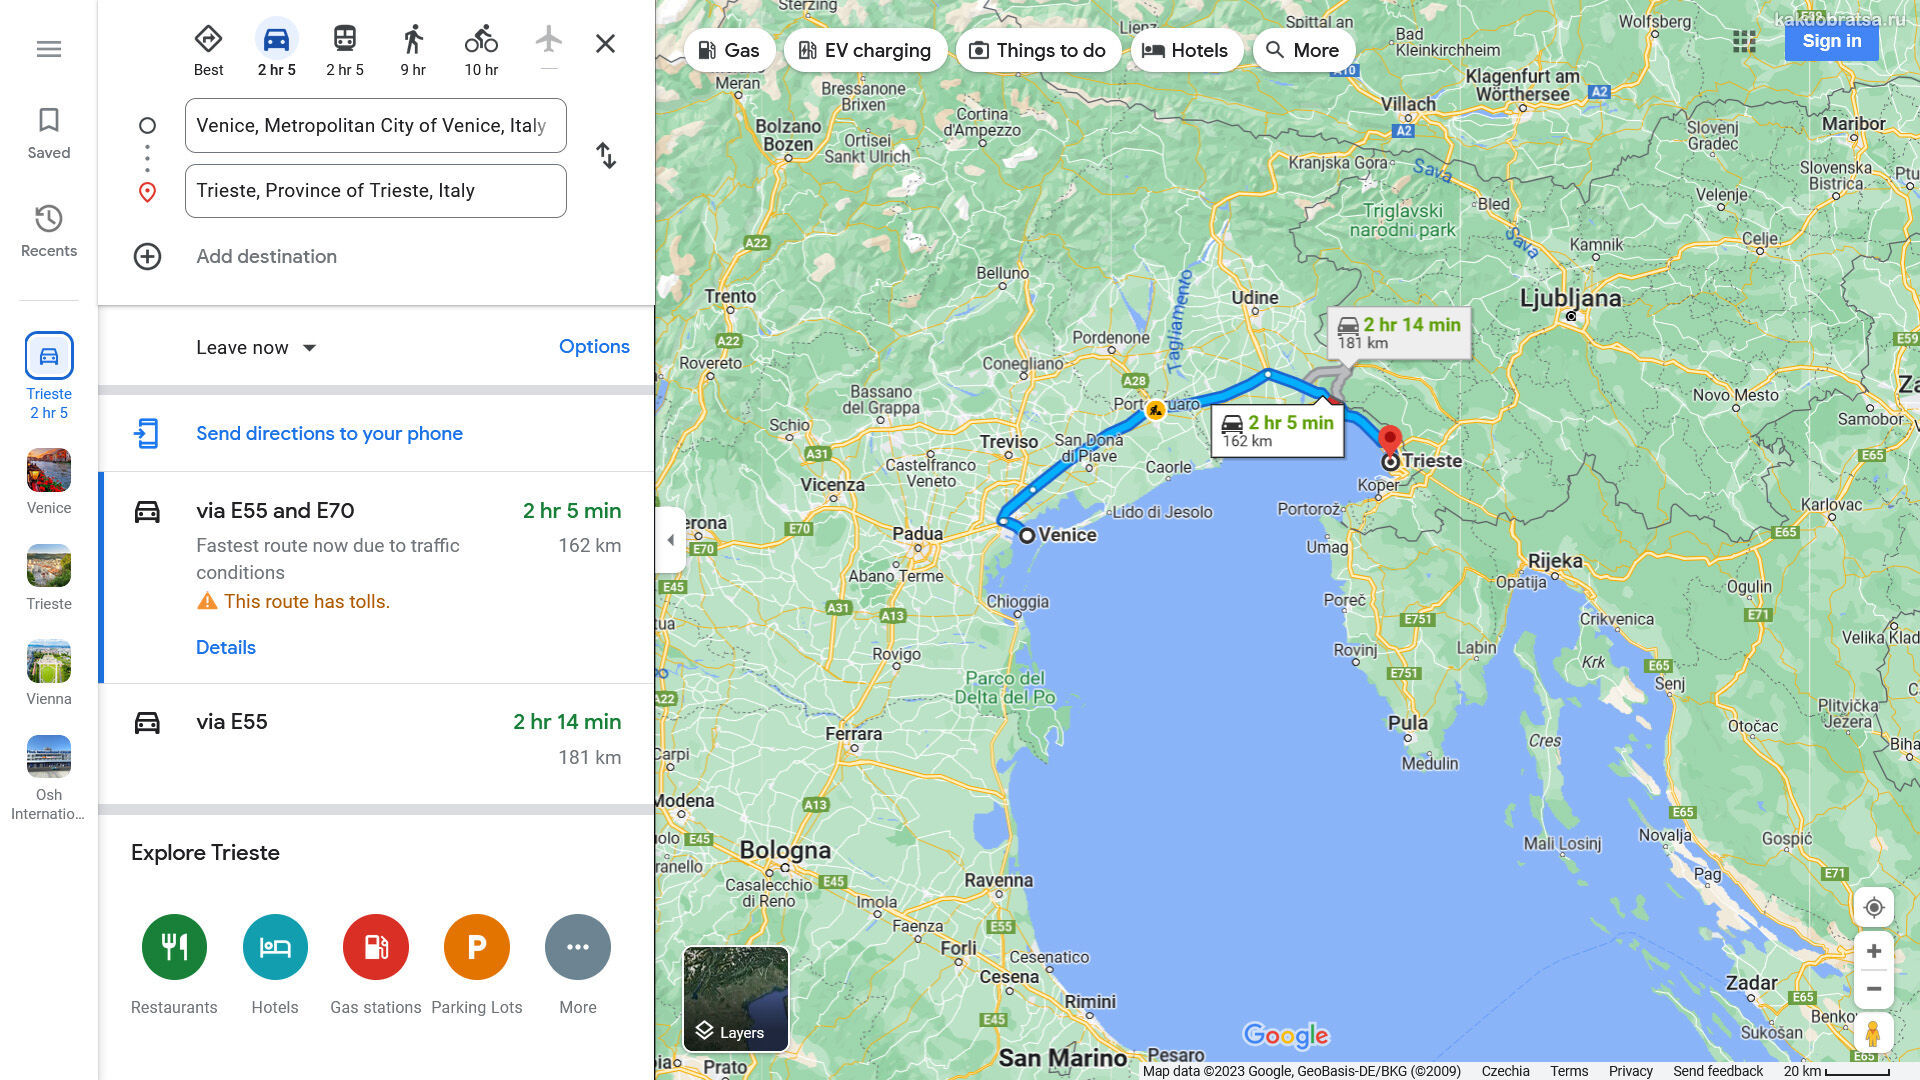 Расстояние от Венеции до Триста по карте в км